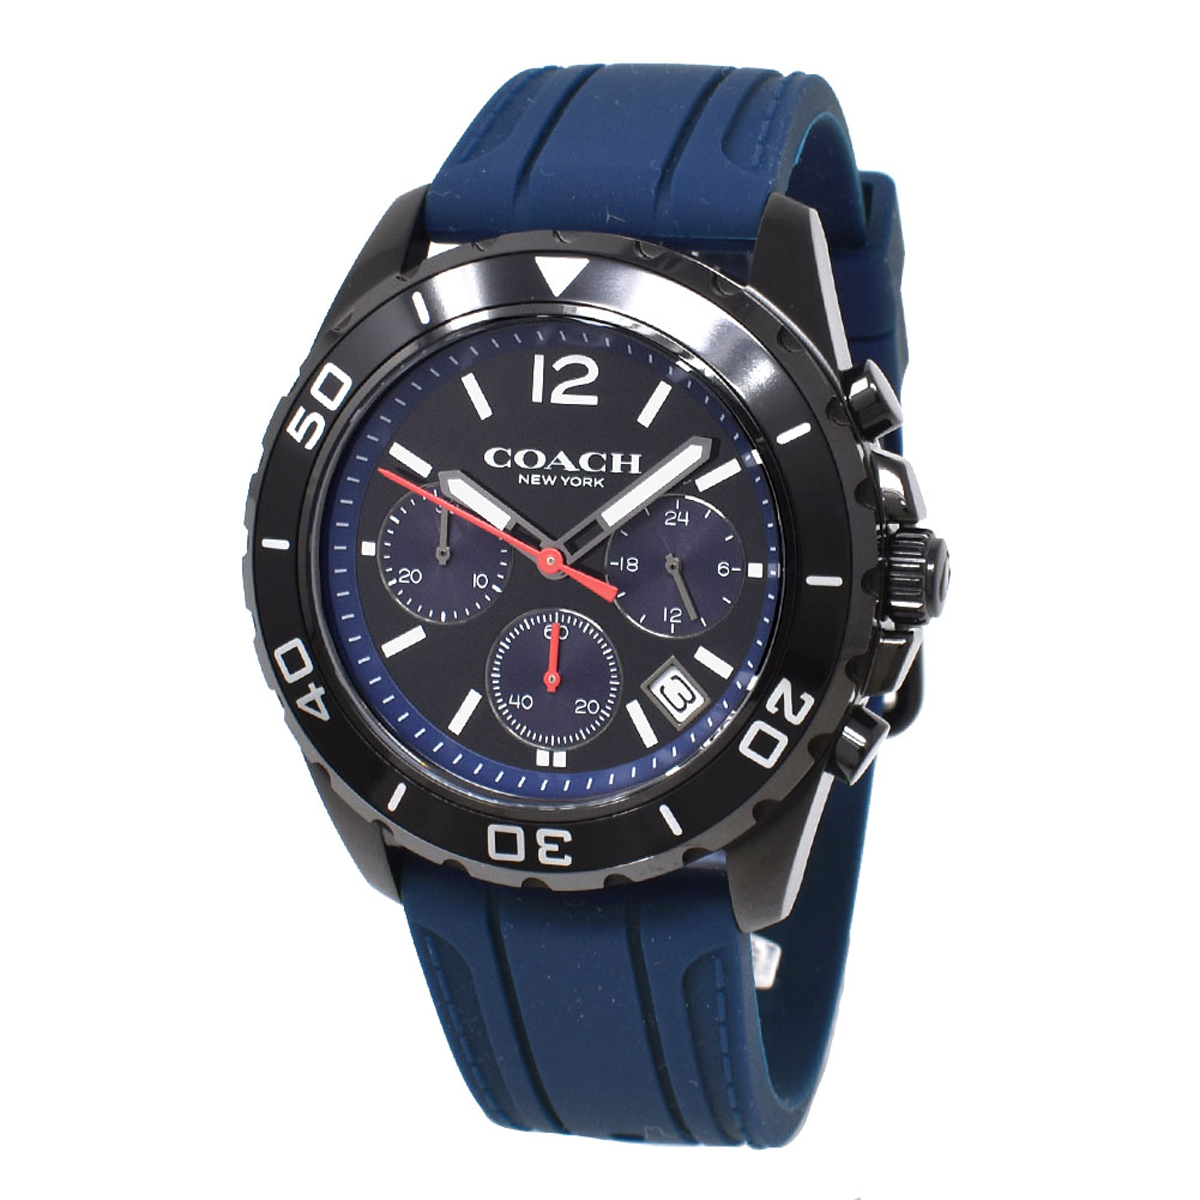 コーチ COACH 腕時計 14602566 KENT ケント アナログ 時計 メンズ ウォッチ ネイビー クオーツ 海外正規品腕時計 時計 ブランド 人気 プ